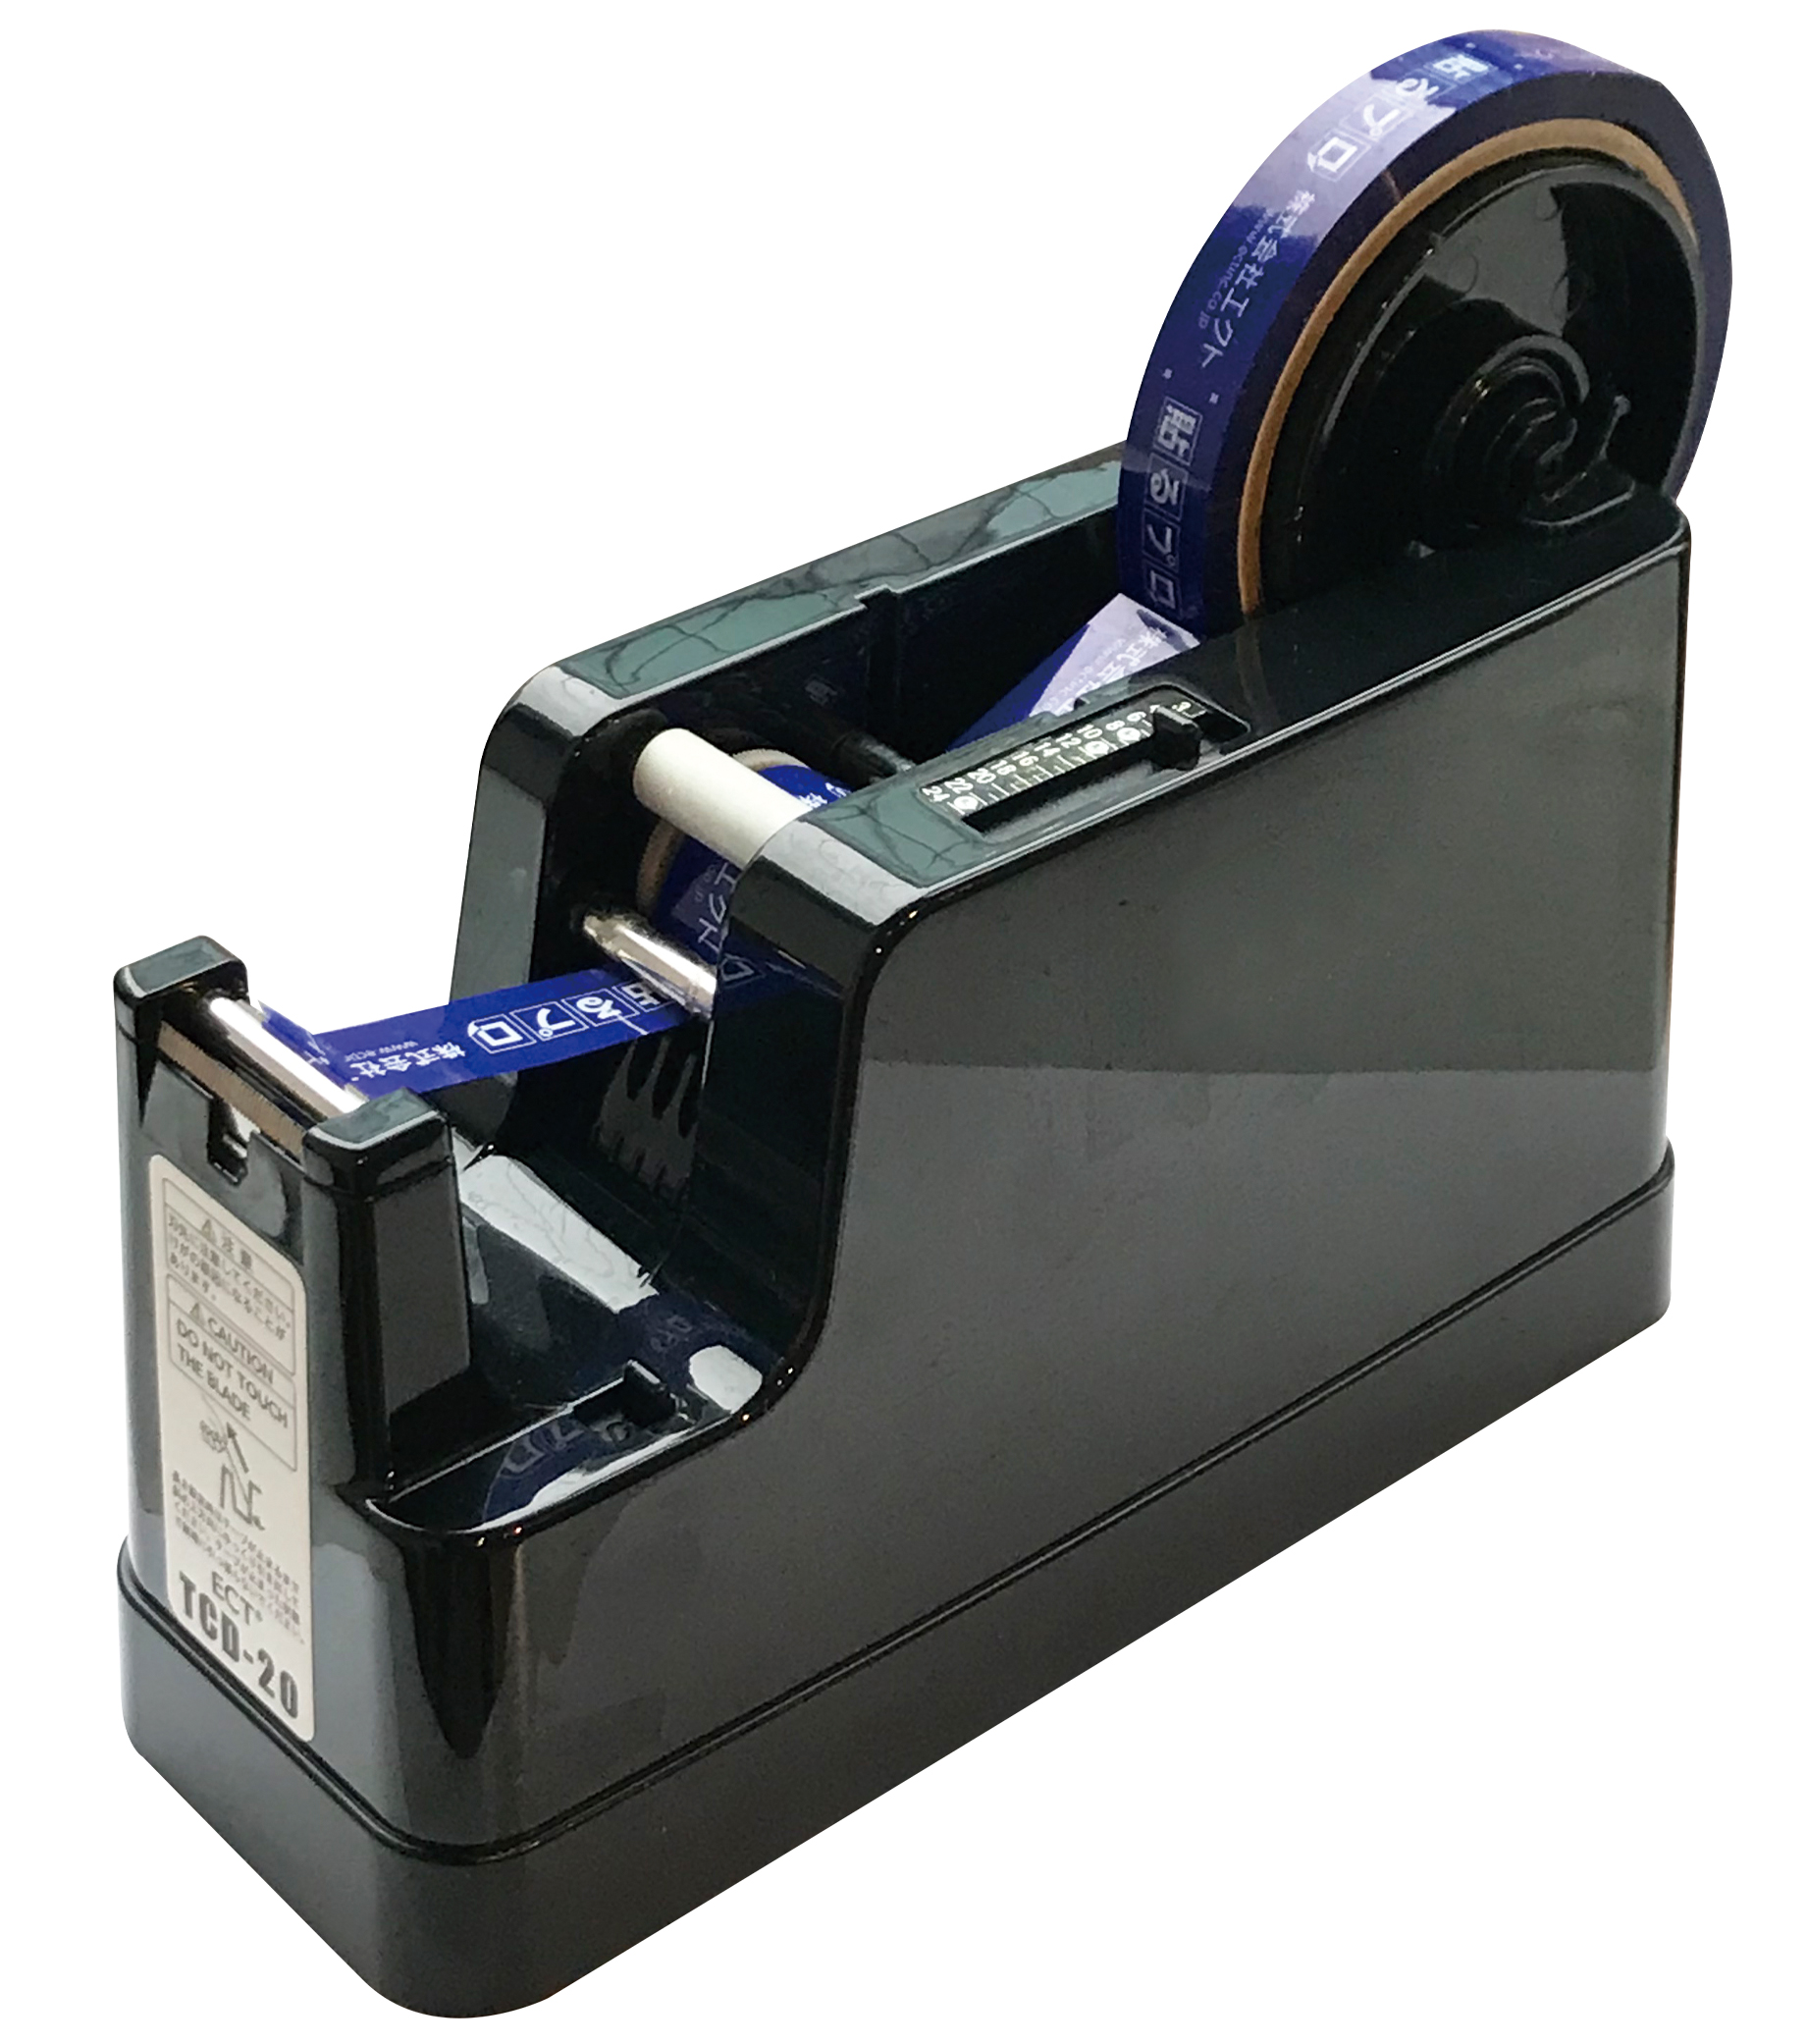 エクト:自動テープディスペンサー (メモリー機能 安全シャッター付き) MS-2200 テープ 梱包 物流 絶縁 自動 ハーネス マスキング 作業  通販